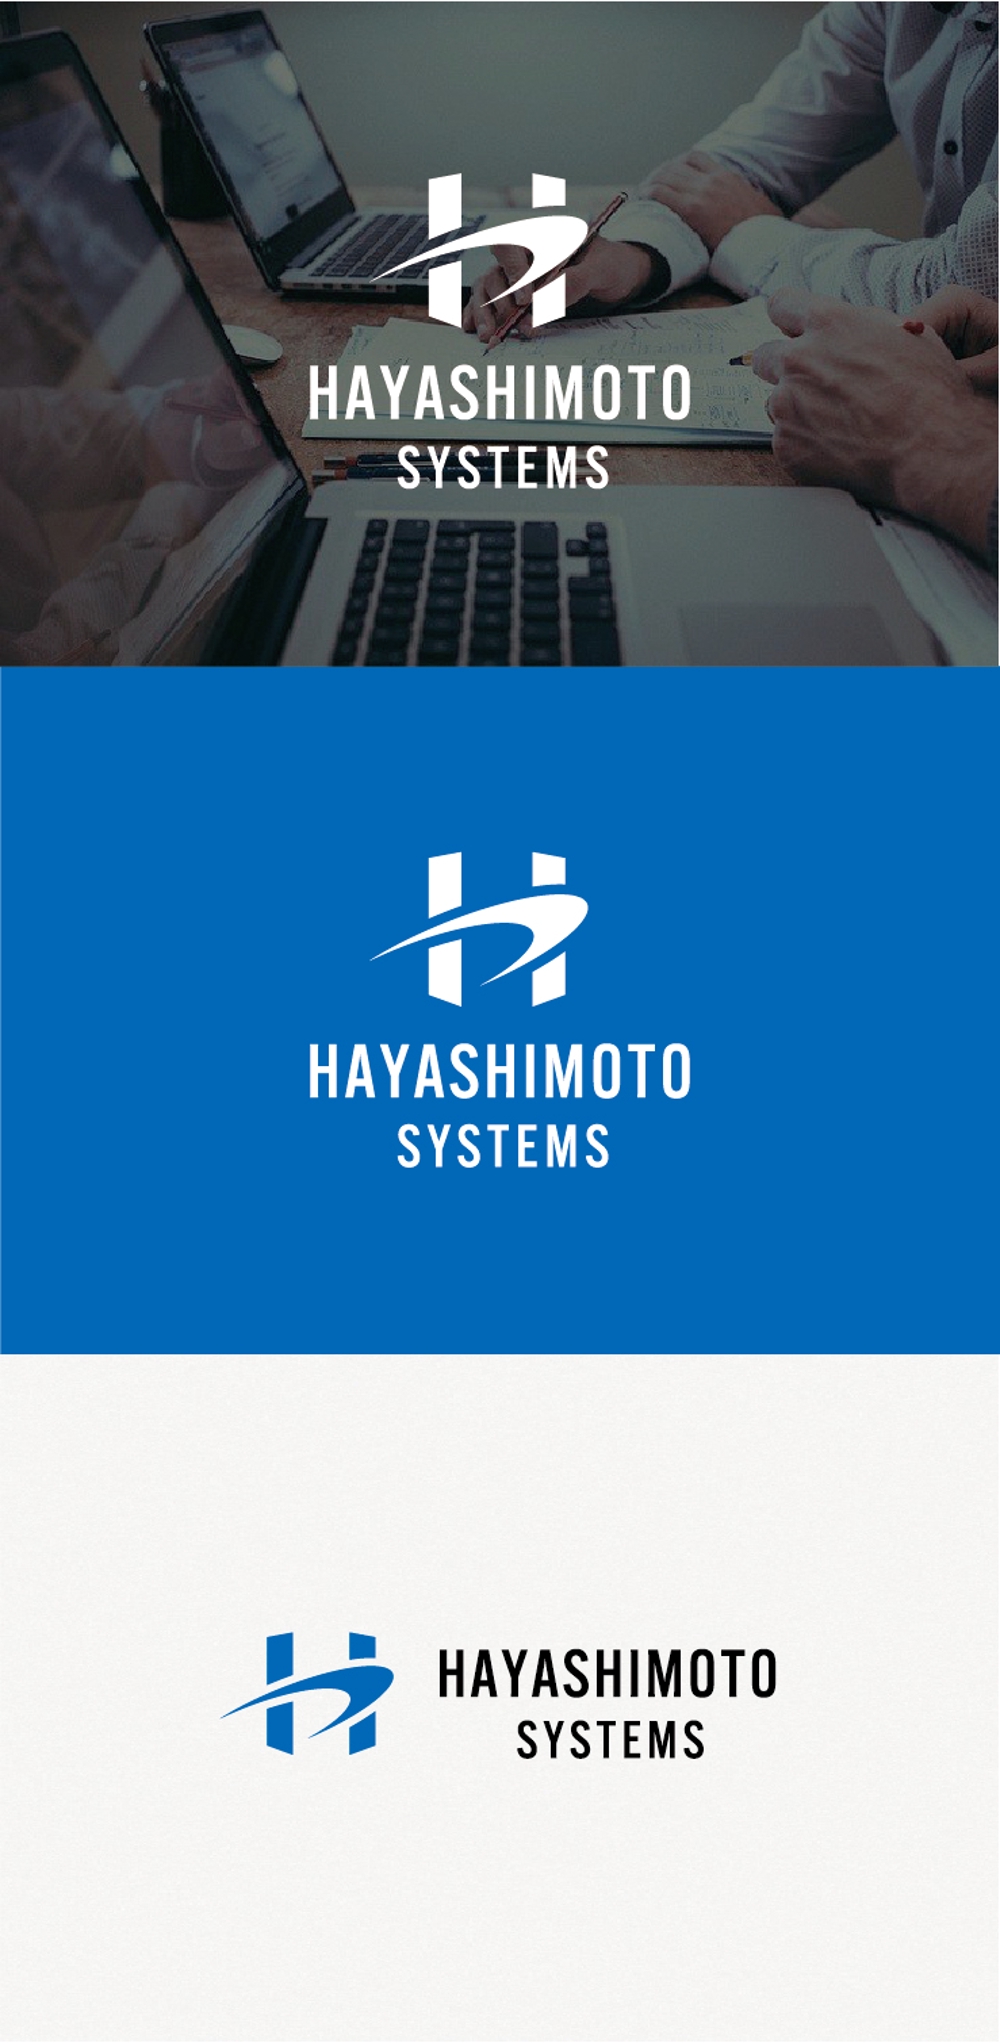 ITエンジニアリング・情報セキュリティ監査を行う会社「ハヤシモトシステムズ」のロゴ